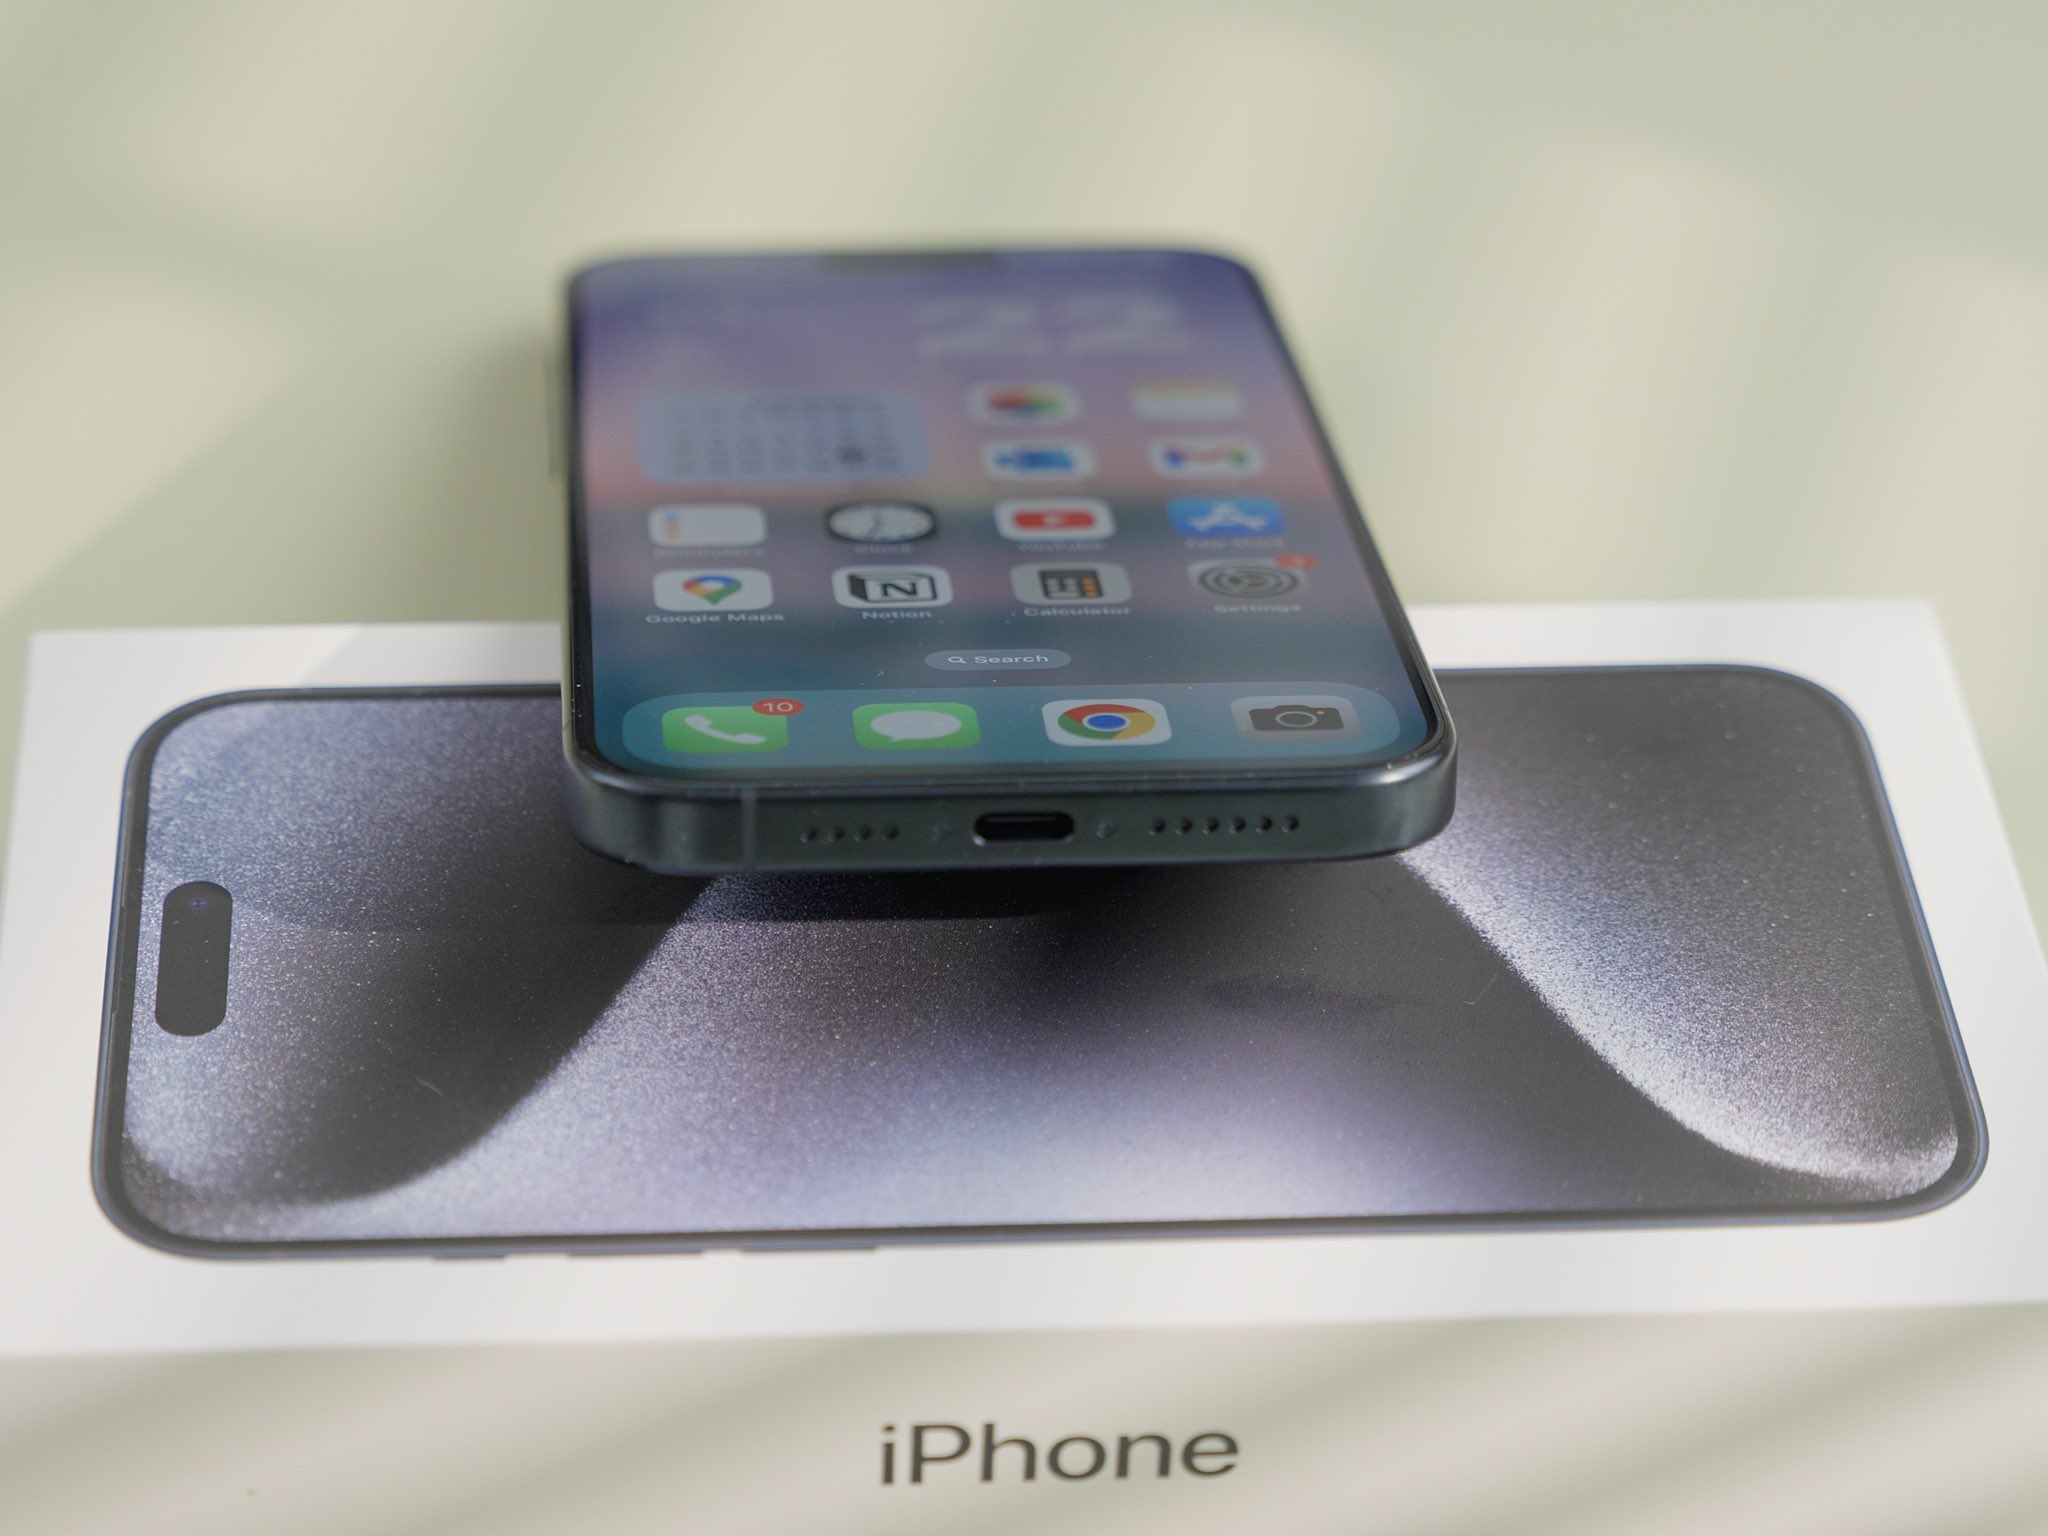 iPhone 15 Pro Max Blue titanium 🌌 Unboxing aesthetic setup